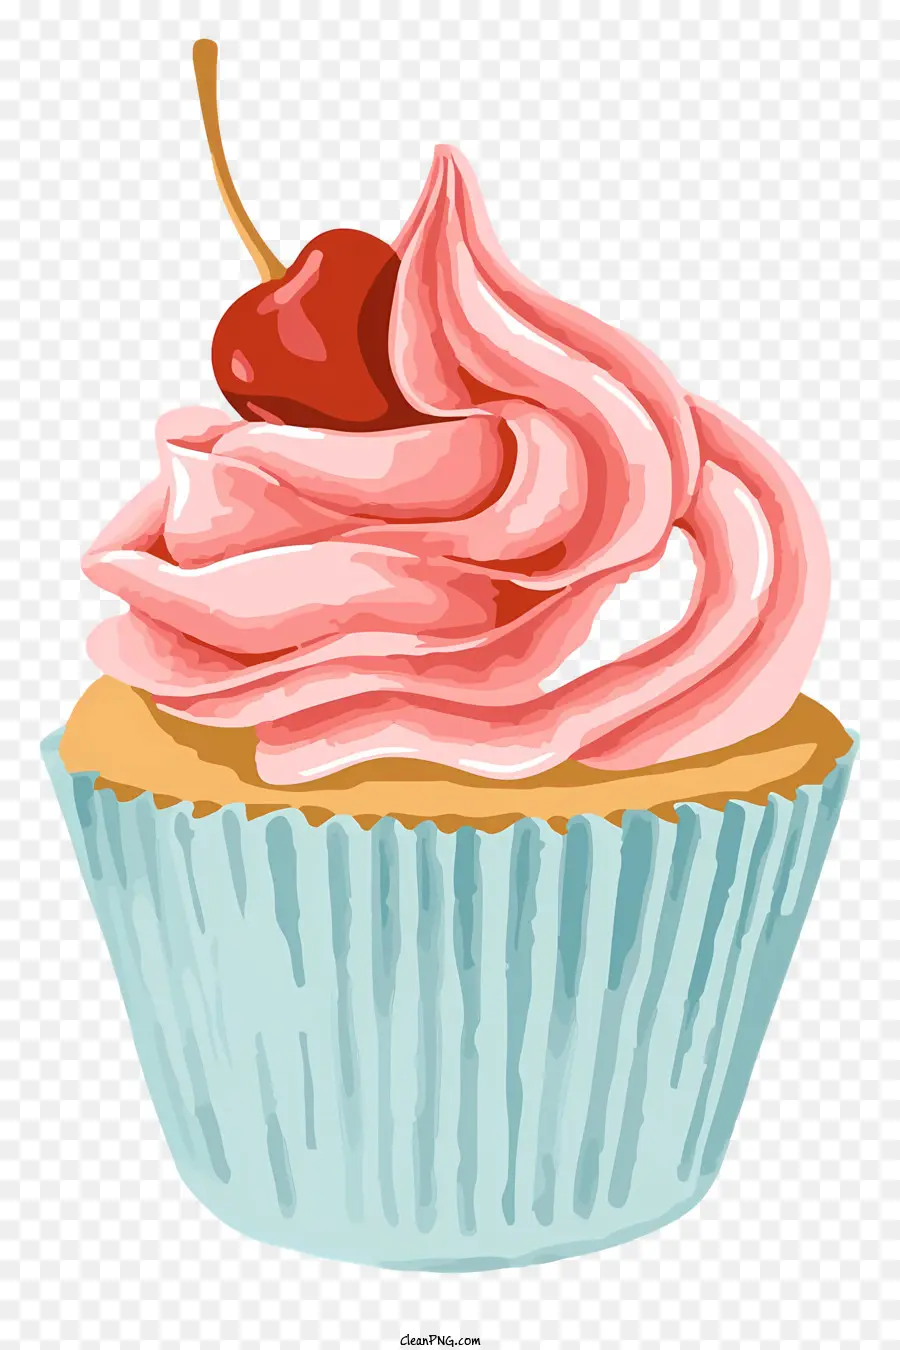 bánh cupcake màu hồng đánh kem anh đào trên chiếc bánh cupcake frosting màu trắng hàng đầu với anh đào - Cupcake màu hồng với kem và anh đào